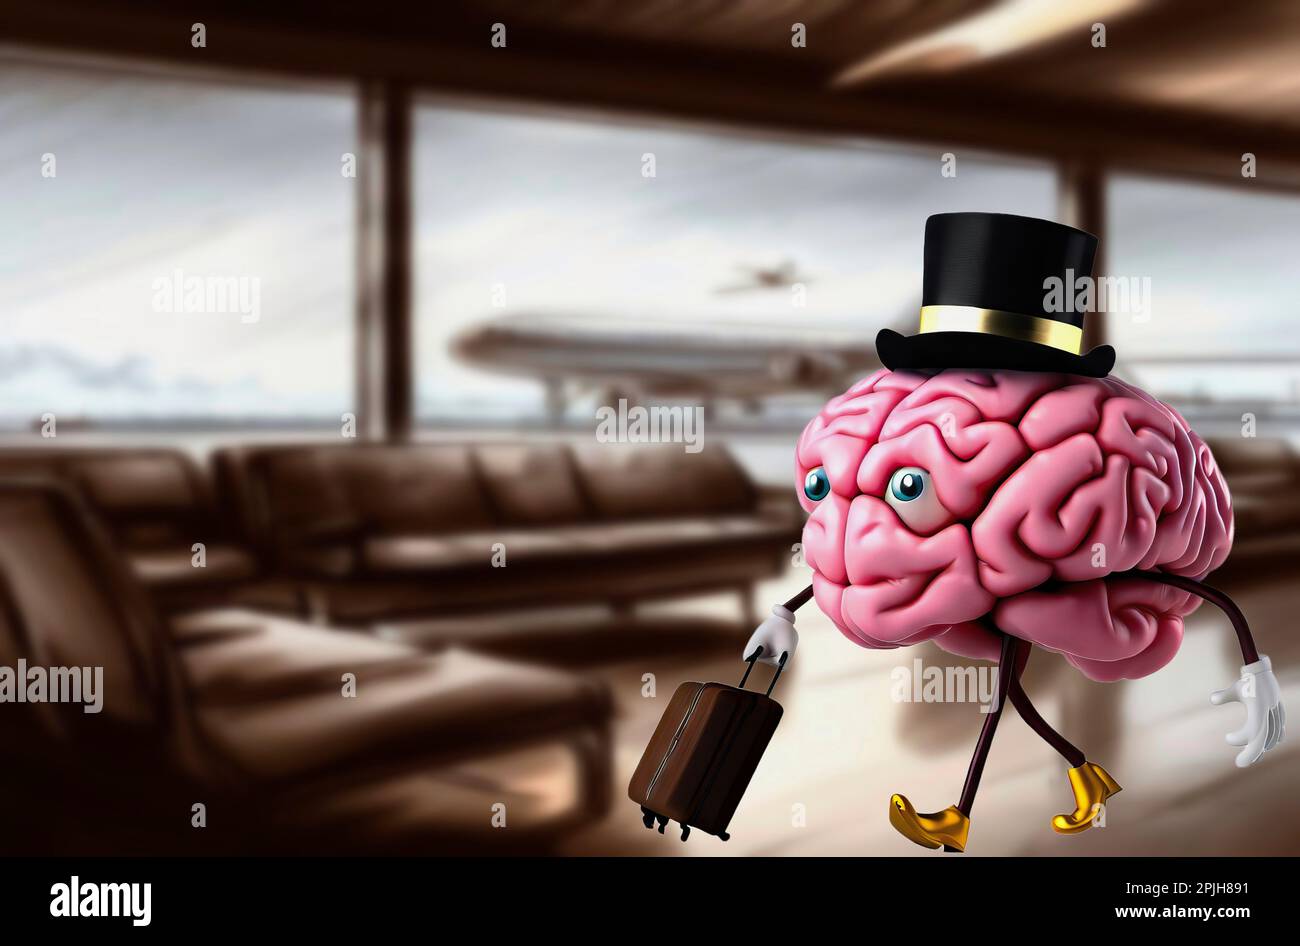 Metapher des Brain Drain. Ein süßes Gehirn im Wartezimmer eines Flughafens, bereit zum Abflug. Stockfoto